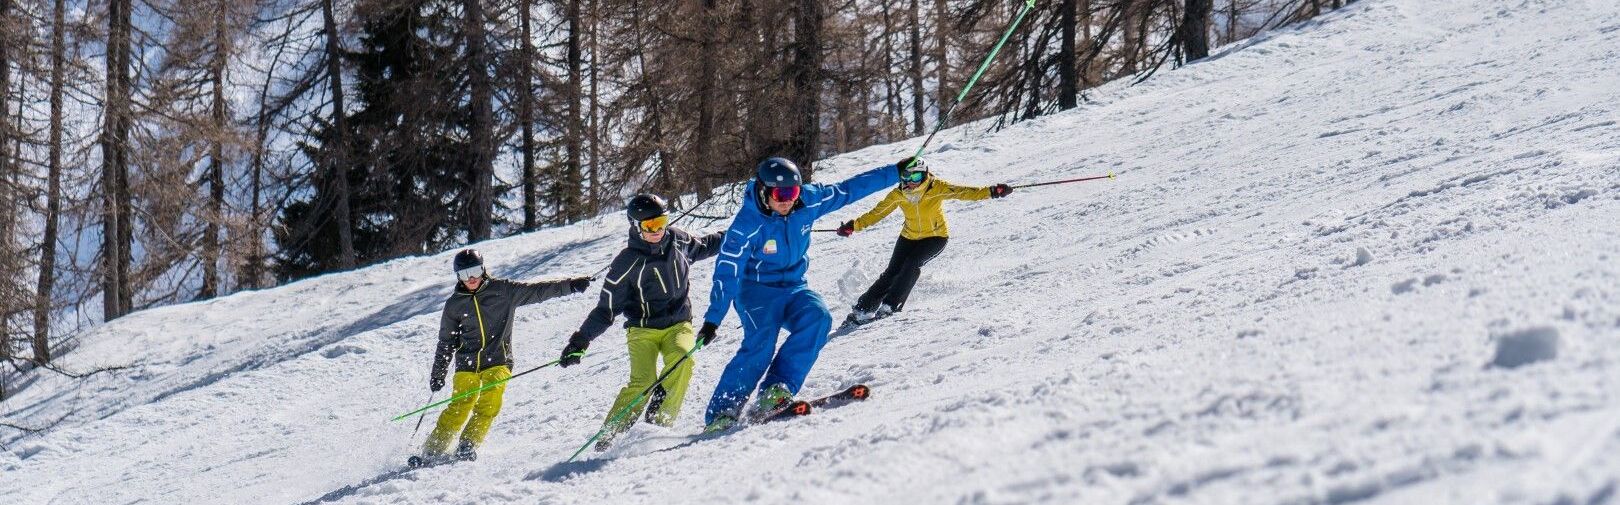 Skicursus in Flachau vanaf 16 jaar - Flachau skischool